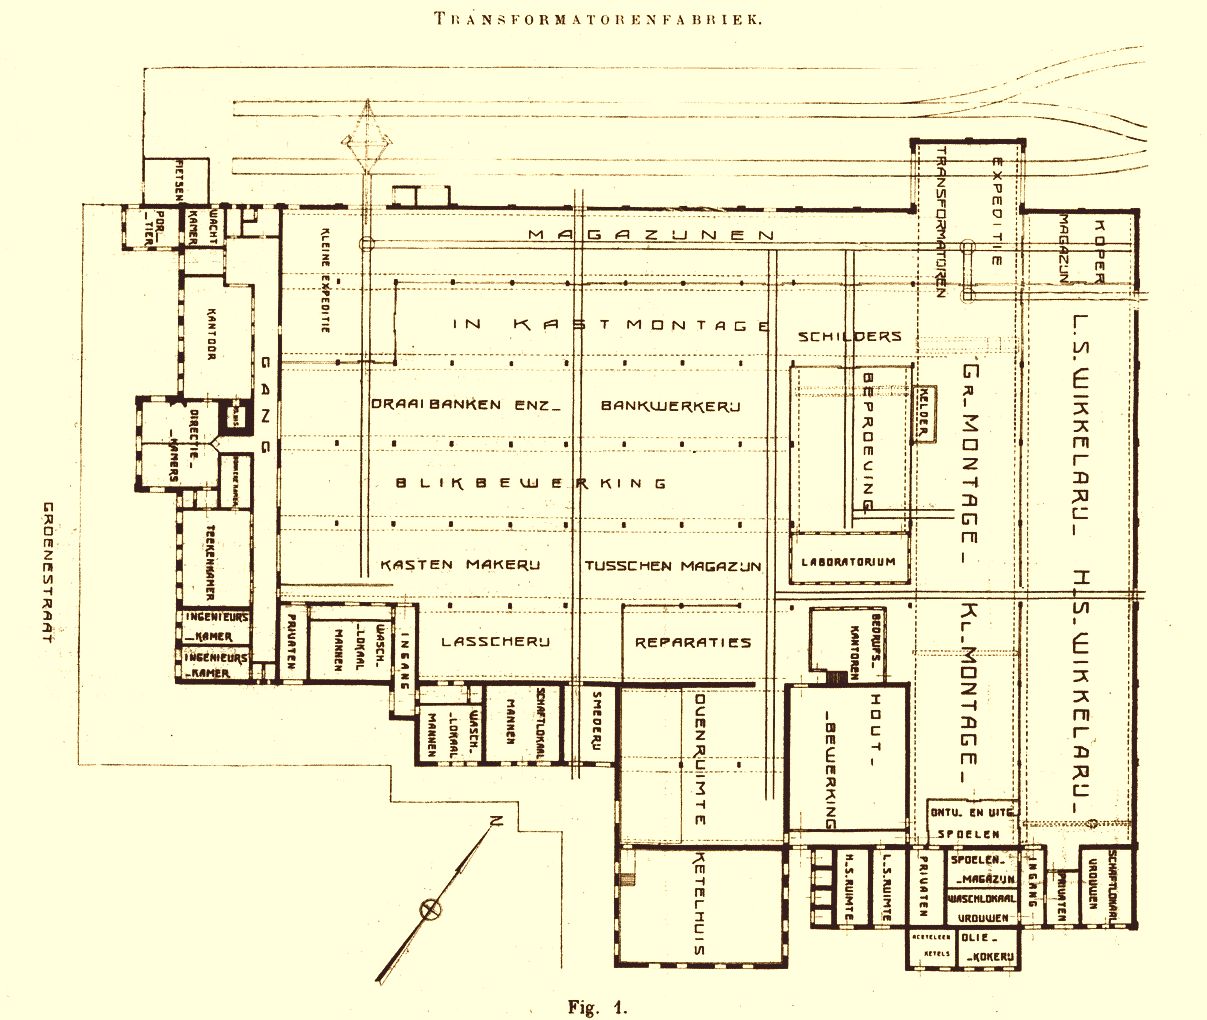 Plattegrond Smit Transformatoren 1921 door Prof. Nolen.